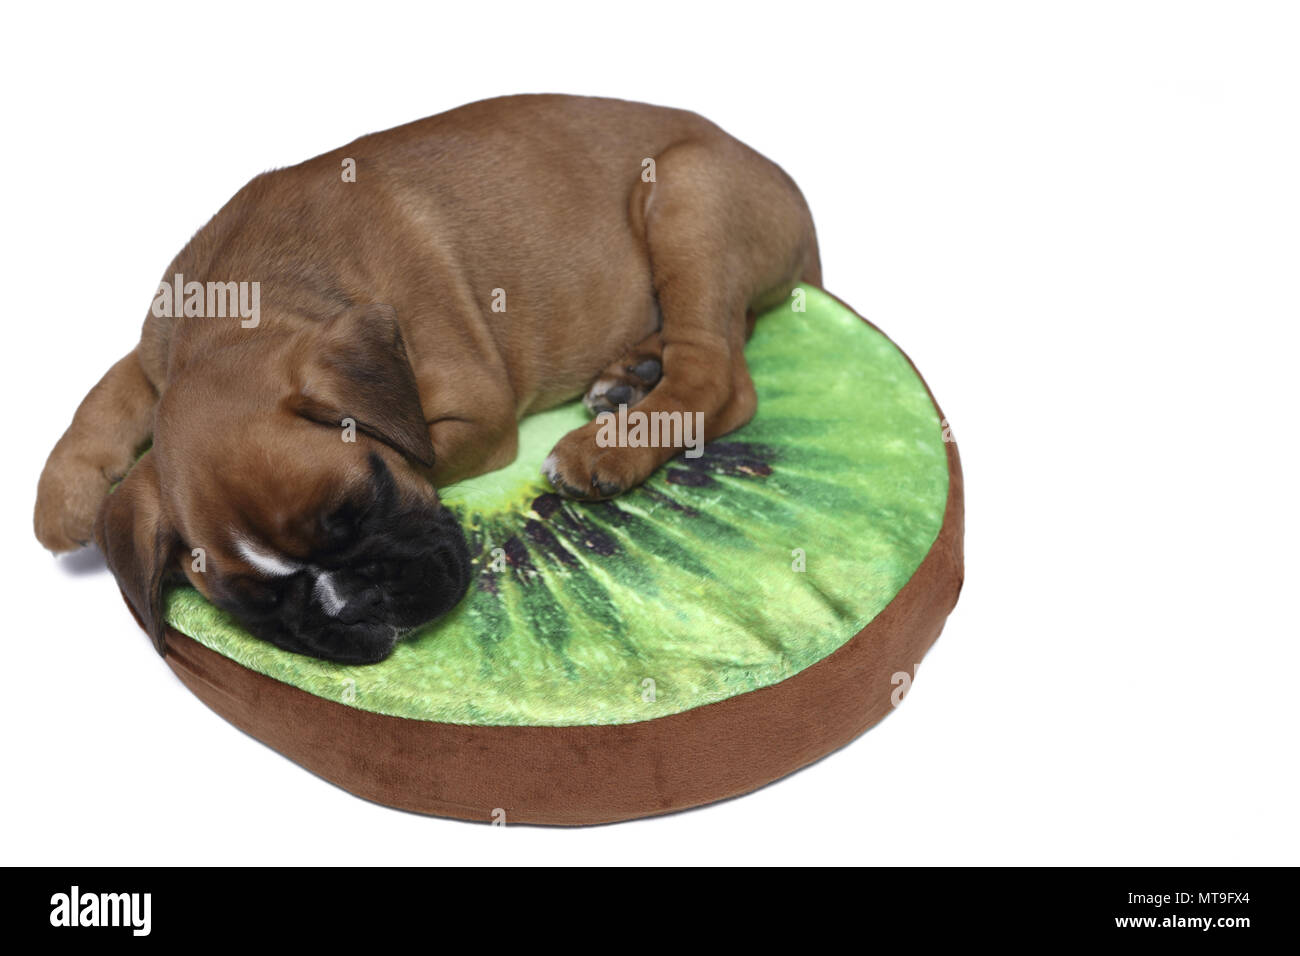 Boxeur allemand. Puppy (7 semaines) de dormir sur un coussin en forme de kiwi. Studio photo Banque D'Images